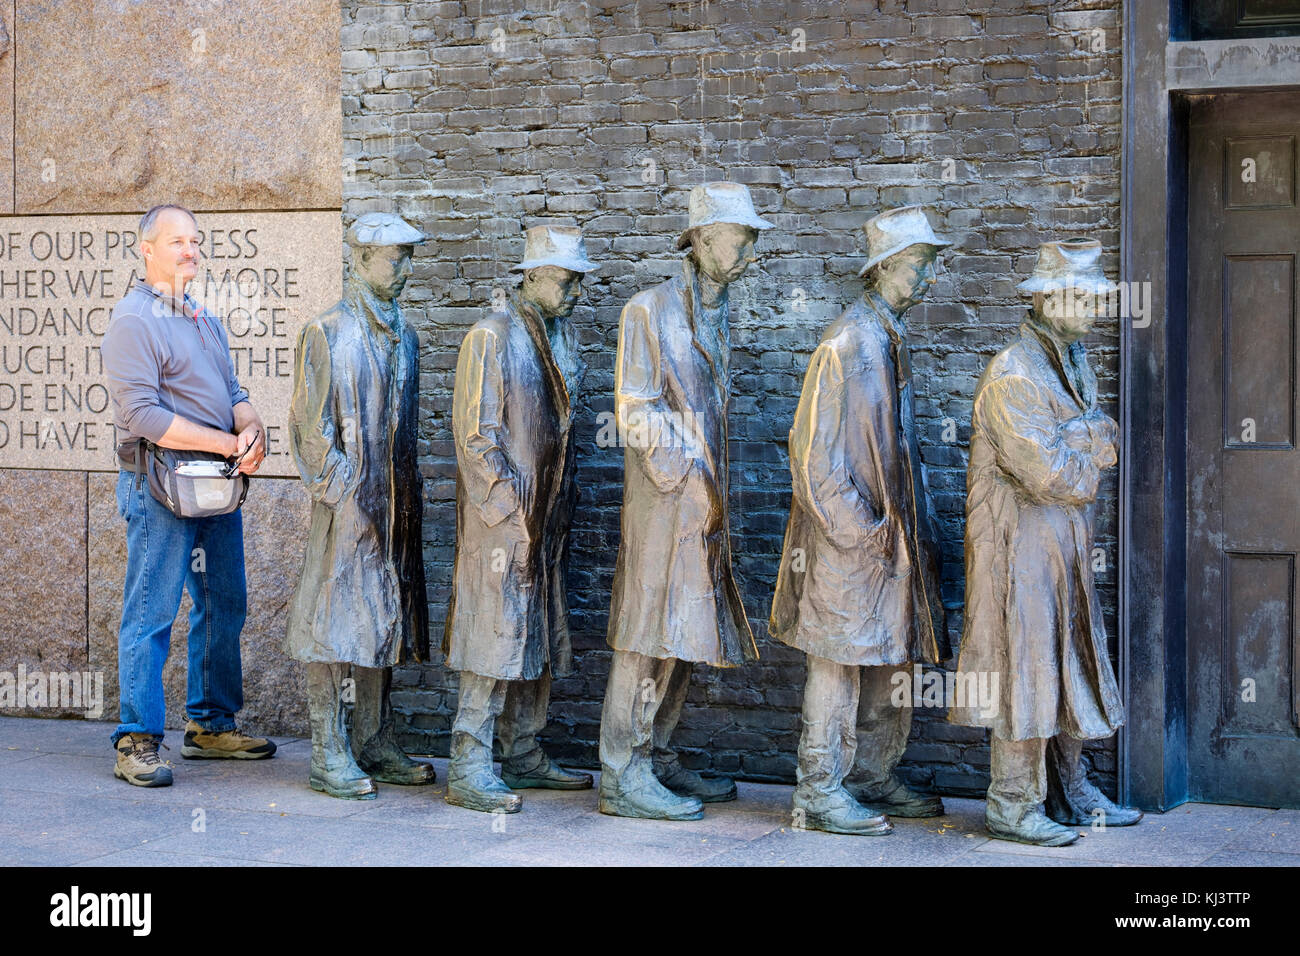 Un turista masculino posando para una foto en Bread Line, escultura de George Segal, Sala dos del Franklin Delano Roosevelt Memorial, Washington, D.C., EE.UU. Foto de stock